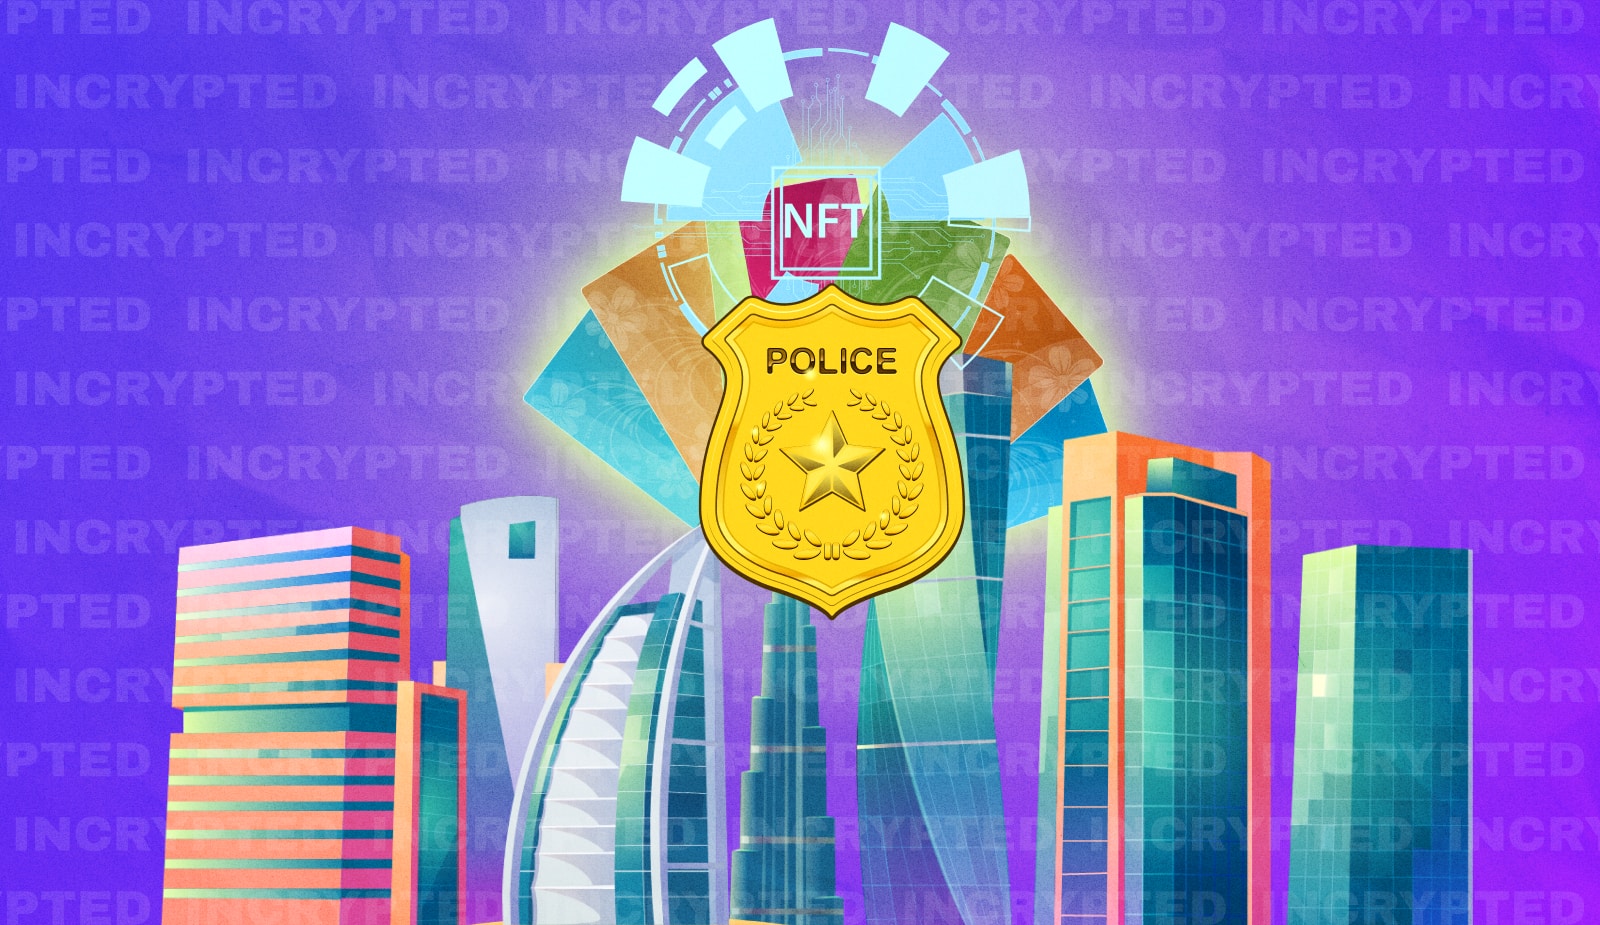 Полиция Дубая запускает следующую NFT-коллекцию. Токены опять раздадут бесплатно. Заглавный коллаж новости.